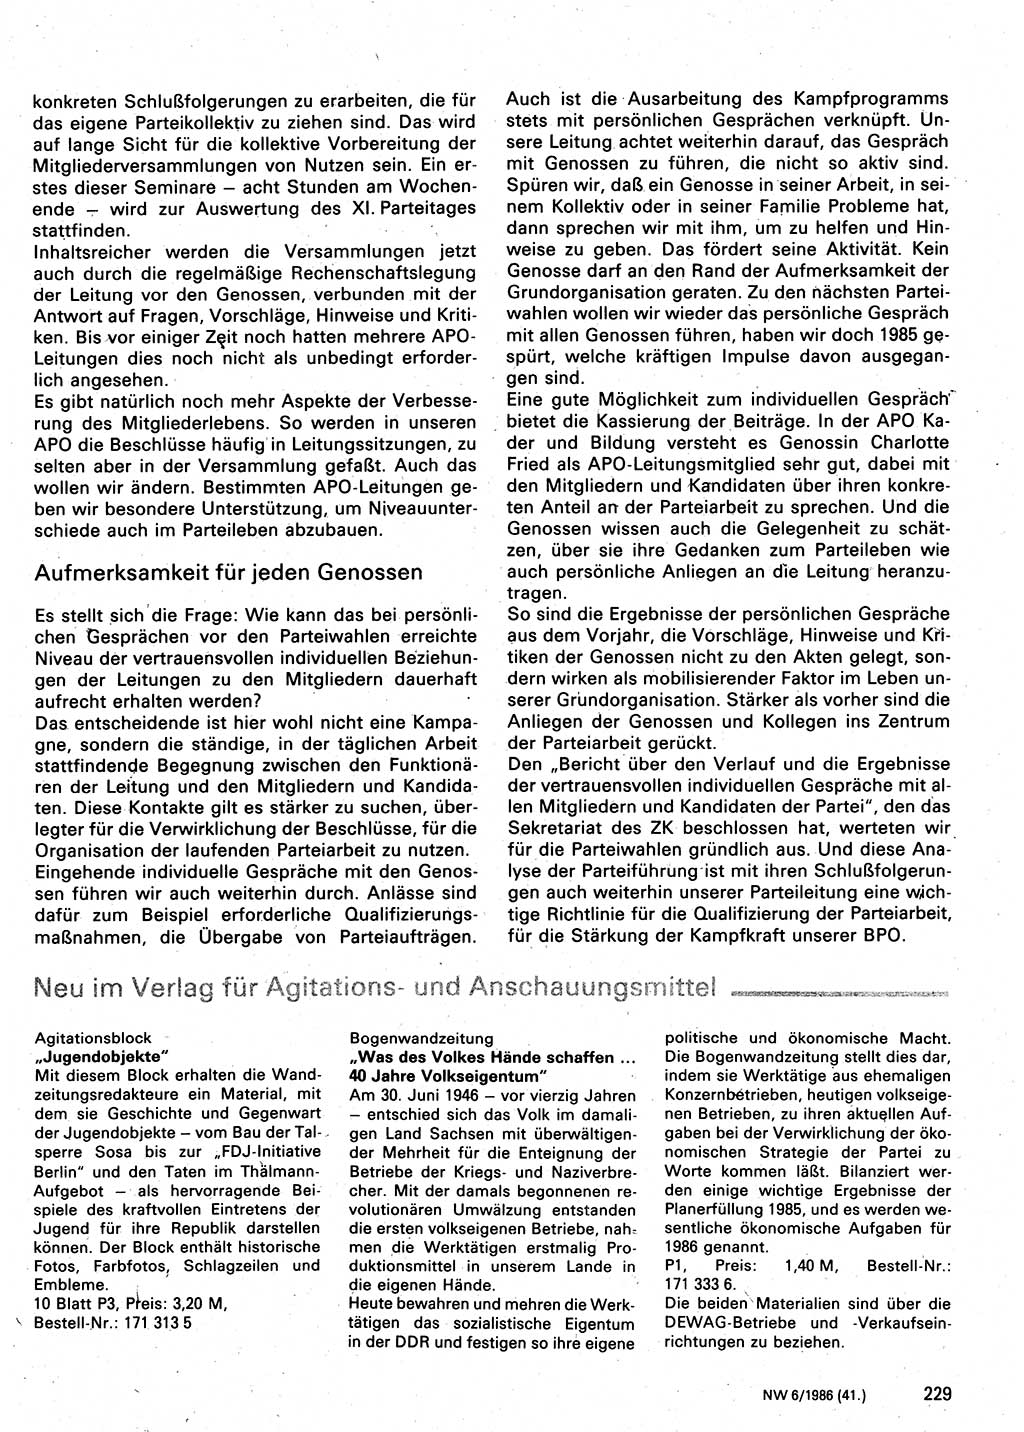 Neuer Weg (NW), Organ des Zentralkomitees (ZK) der SED (Sozialistische Einheitspartei Deutschlands) für Fragen des Parteilebens, 41. Jahrgang [Deutsche Demokratische Republik (DDR)] 1986, Seite 229 (NW ZK SED DDR 1986, S. 229)